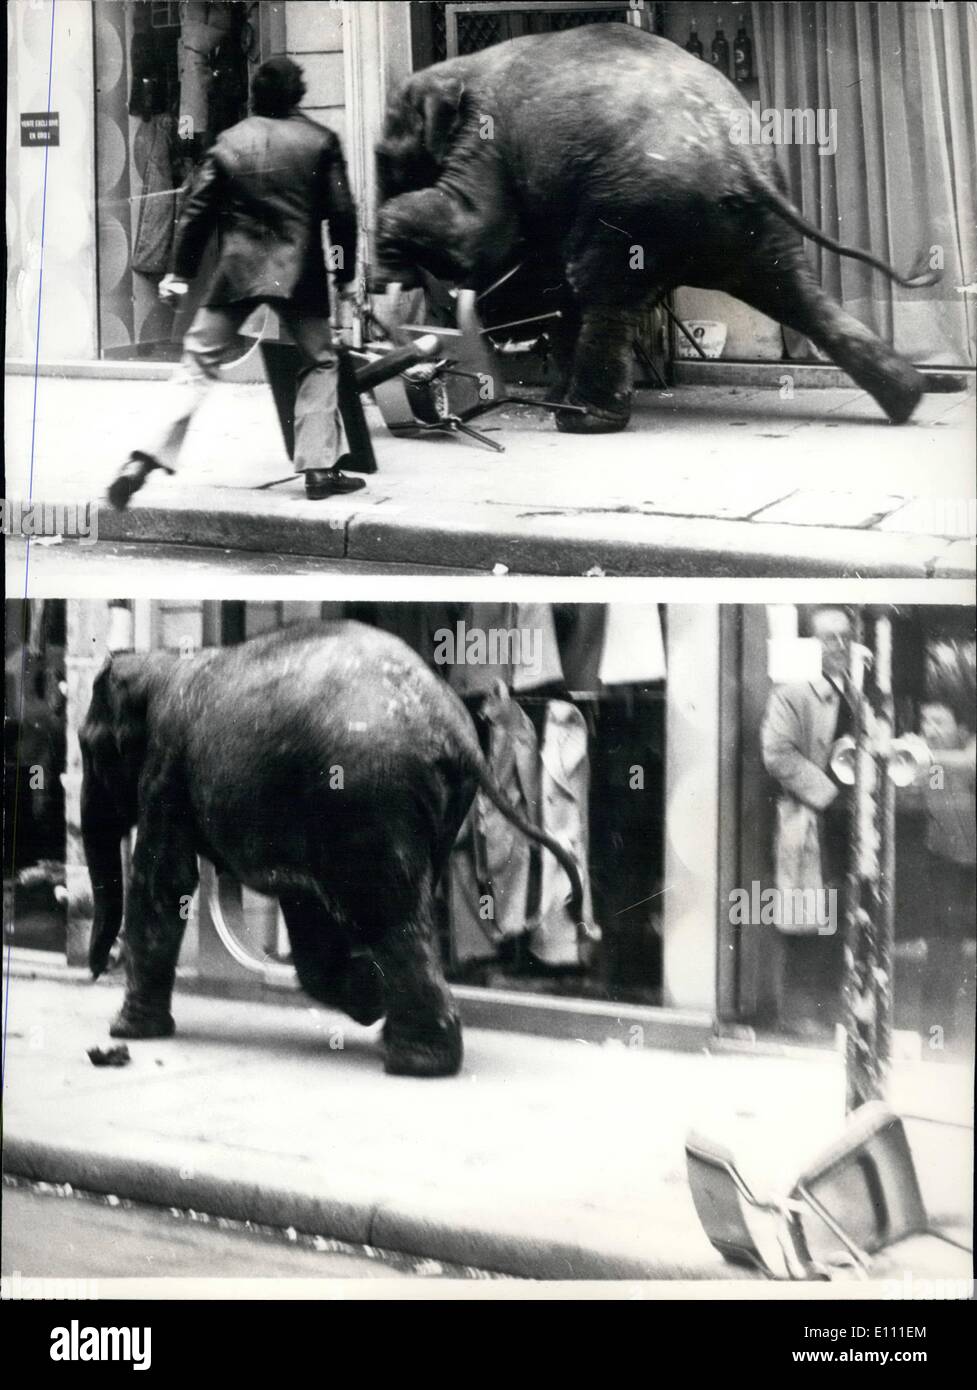 Enero 01, 1975 - El elefante en el rampage en París.: La escena en París cuando un elefante joven de la ciudad del circo de invierno escapó mientras se ejerce por su entrenador y corrió por las calles salvajes, durante la cual se rompieron varios escaparates antes de ser finalmente capturado. Afortunadamente nadie resultó herido. Foto de stock